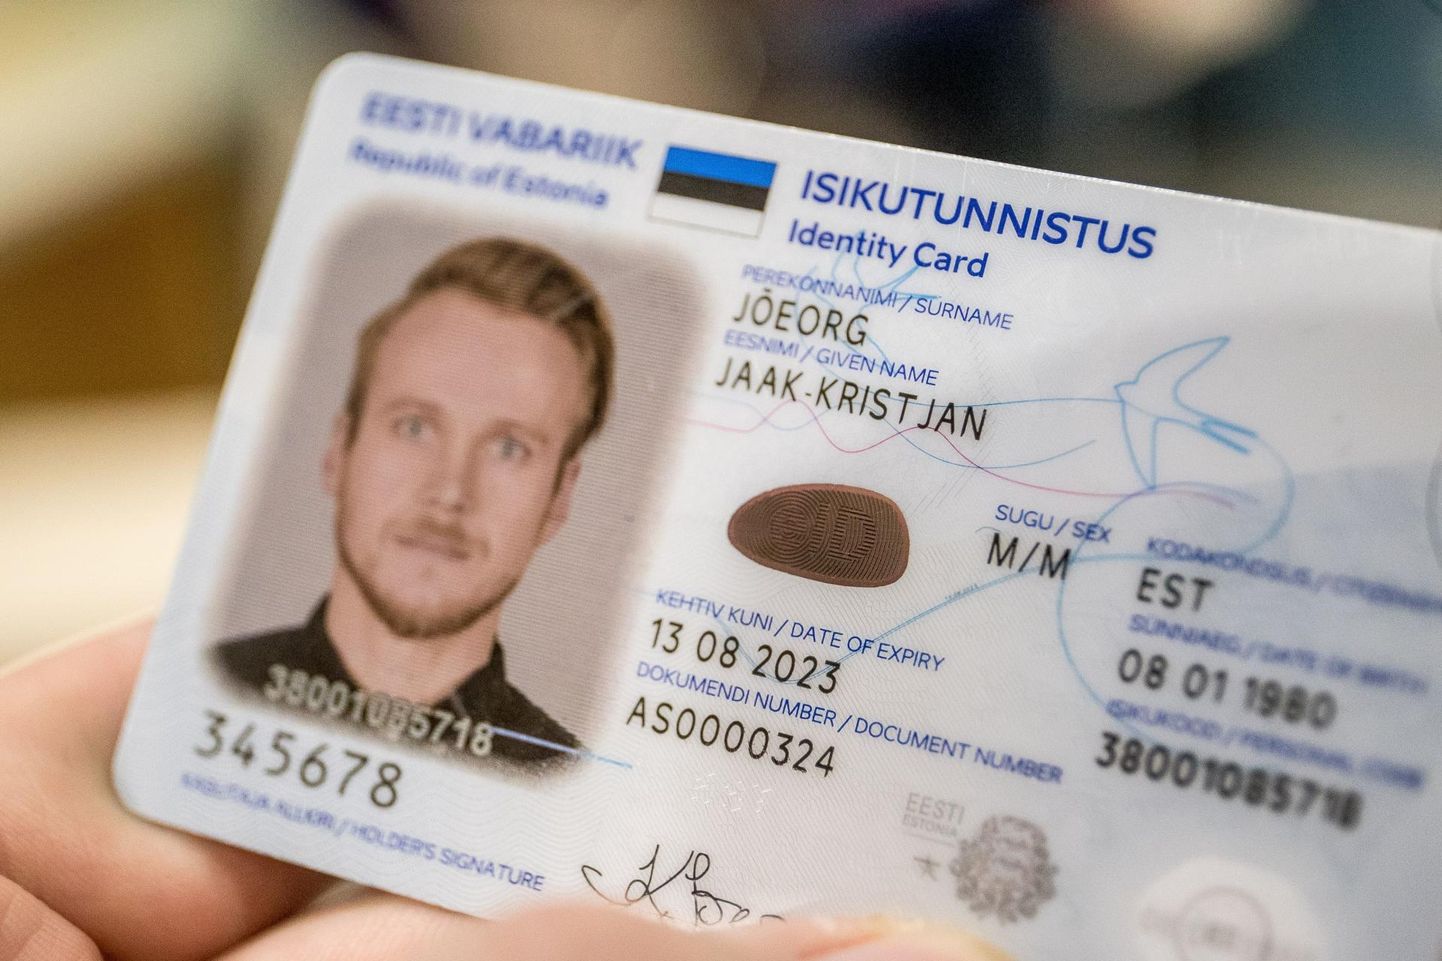 ID-kaardi ja passi saab veebist tellides edaspidi soodsamalt kätte.